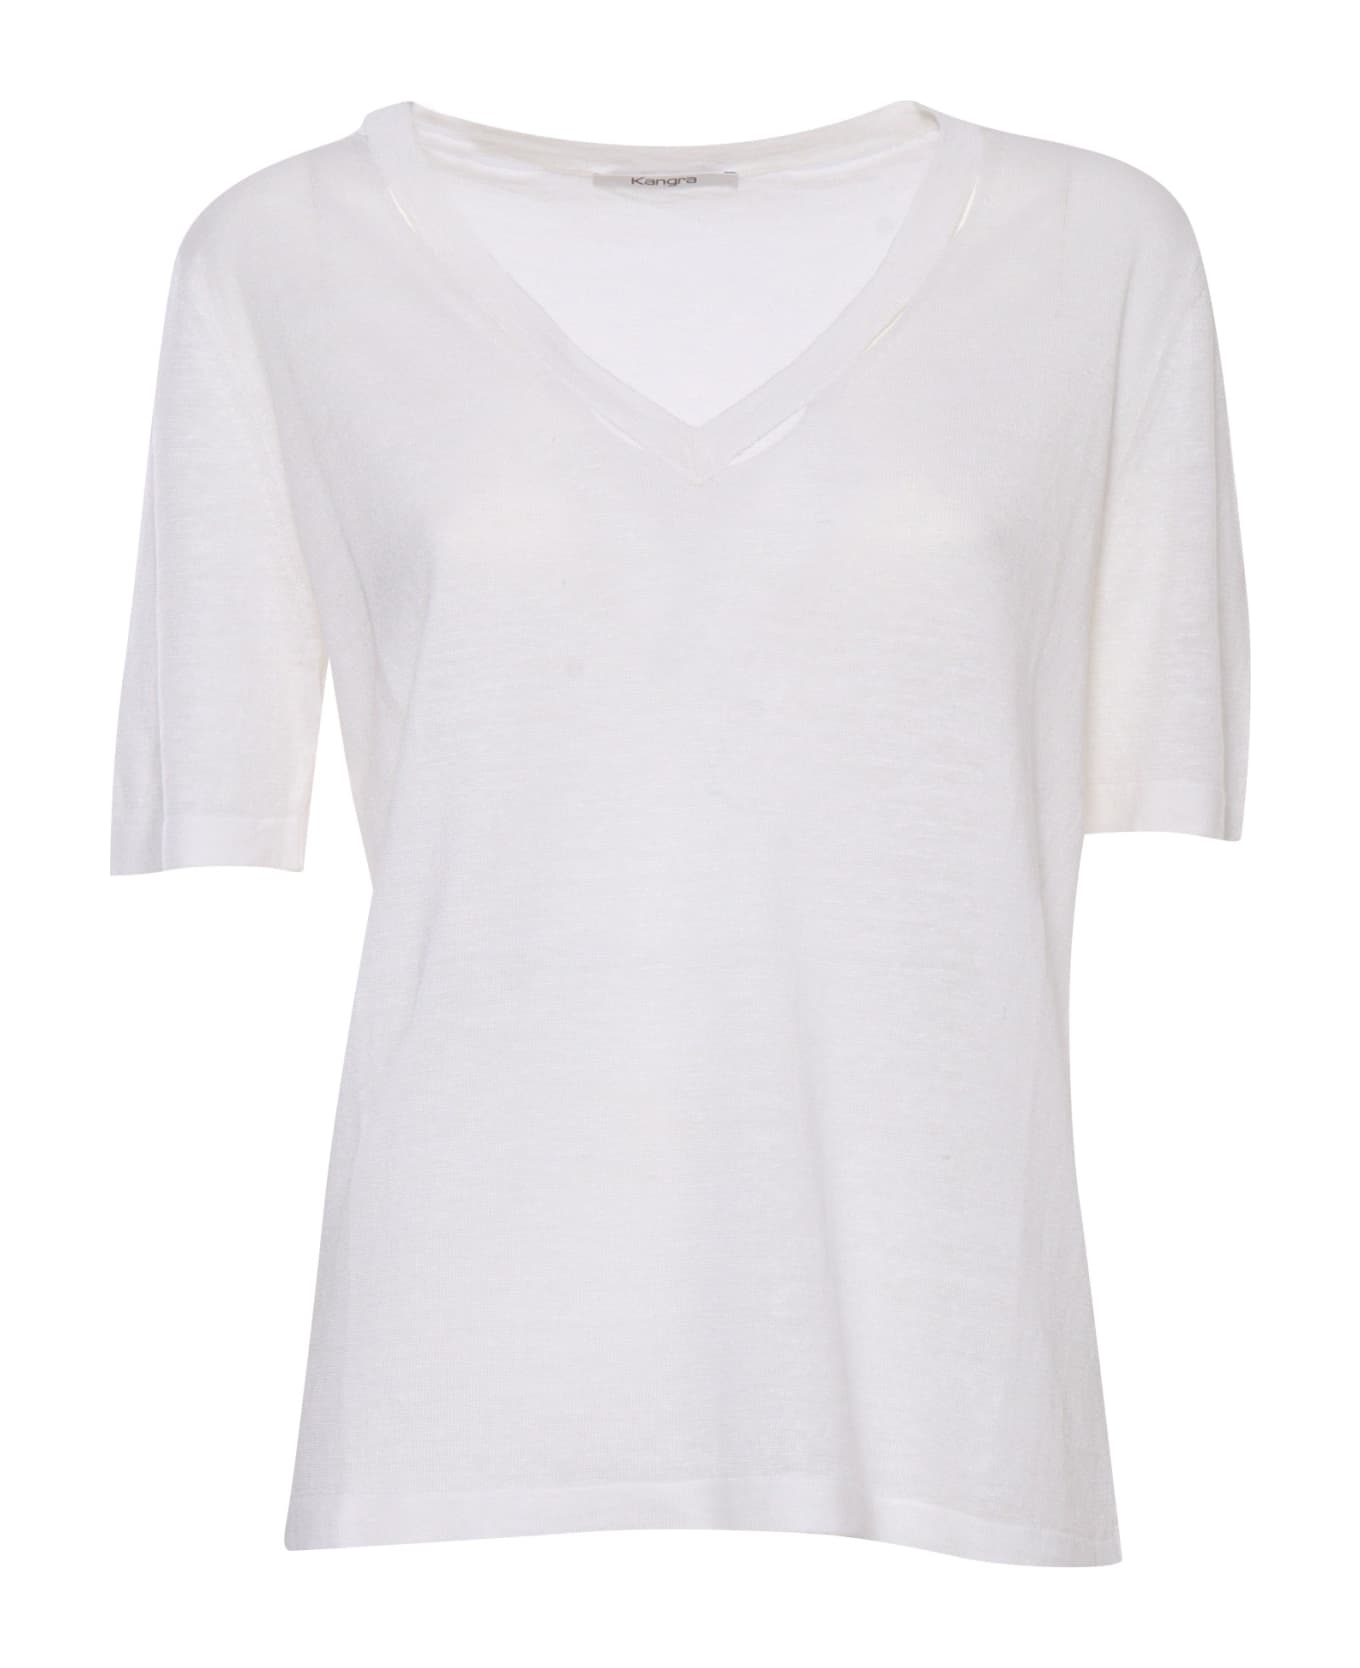 Kangra White Short-sleeved Shirt - WHITE